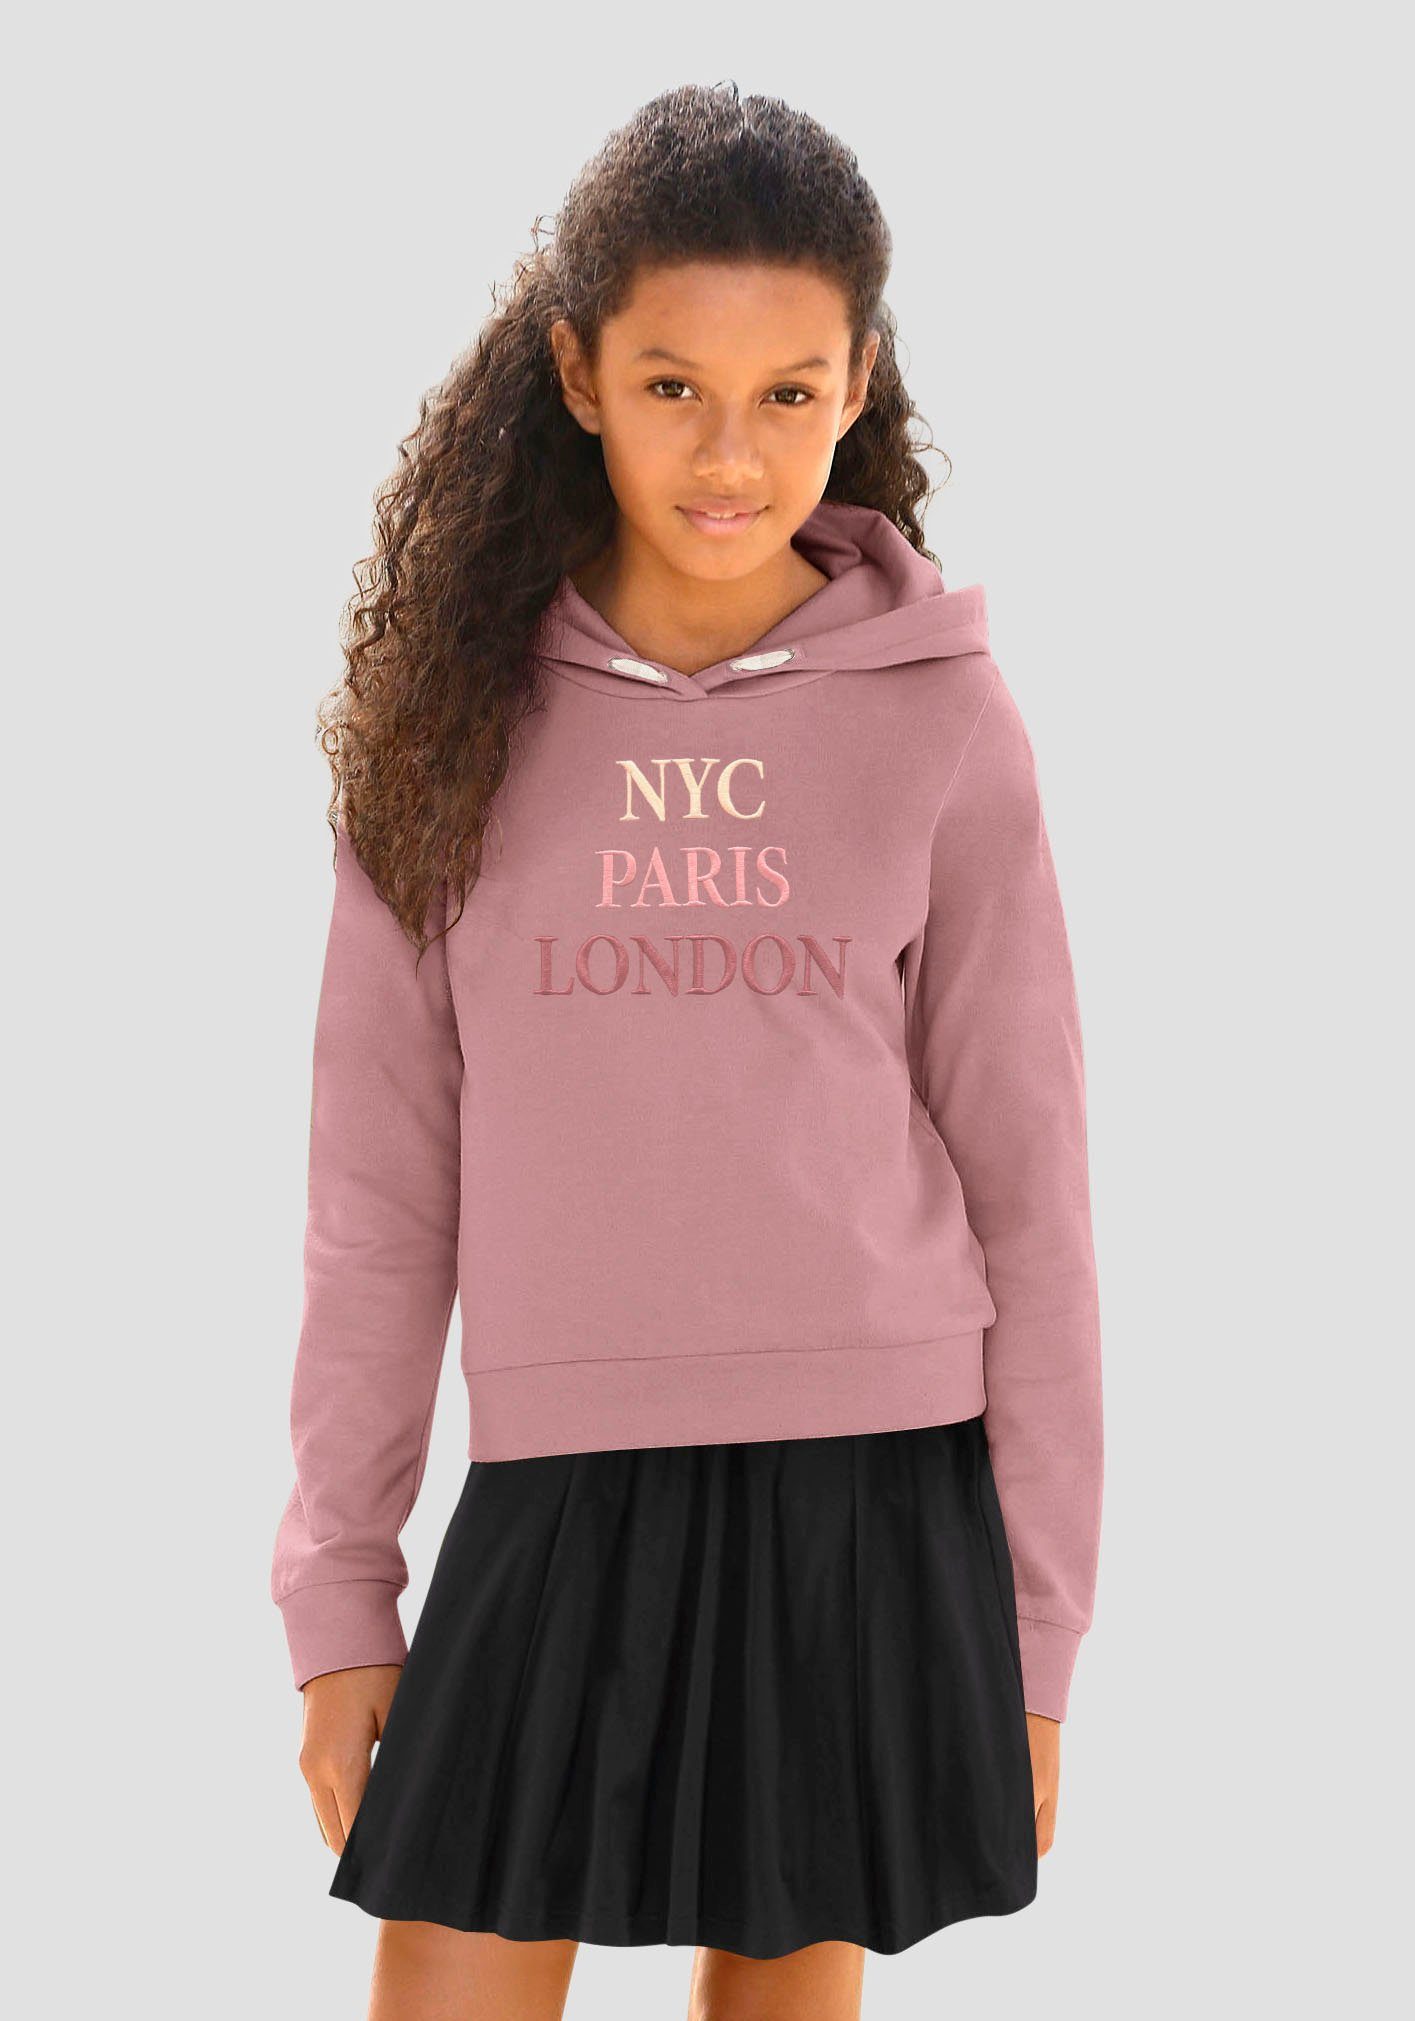 Beeilen Sie sich in den Laden! KIDSWORLD Kapuzensweatshirt NYC Paris London mit Stickerei